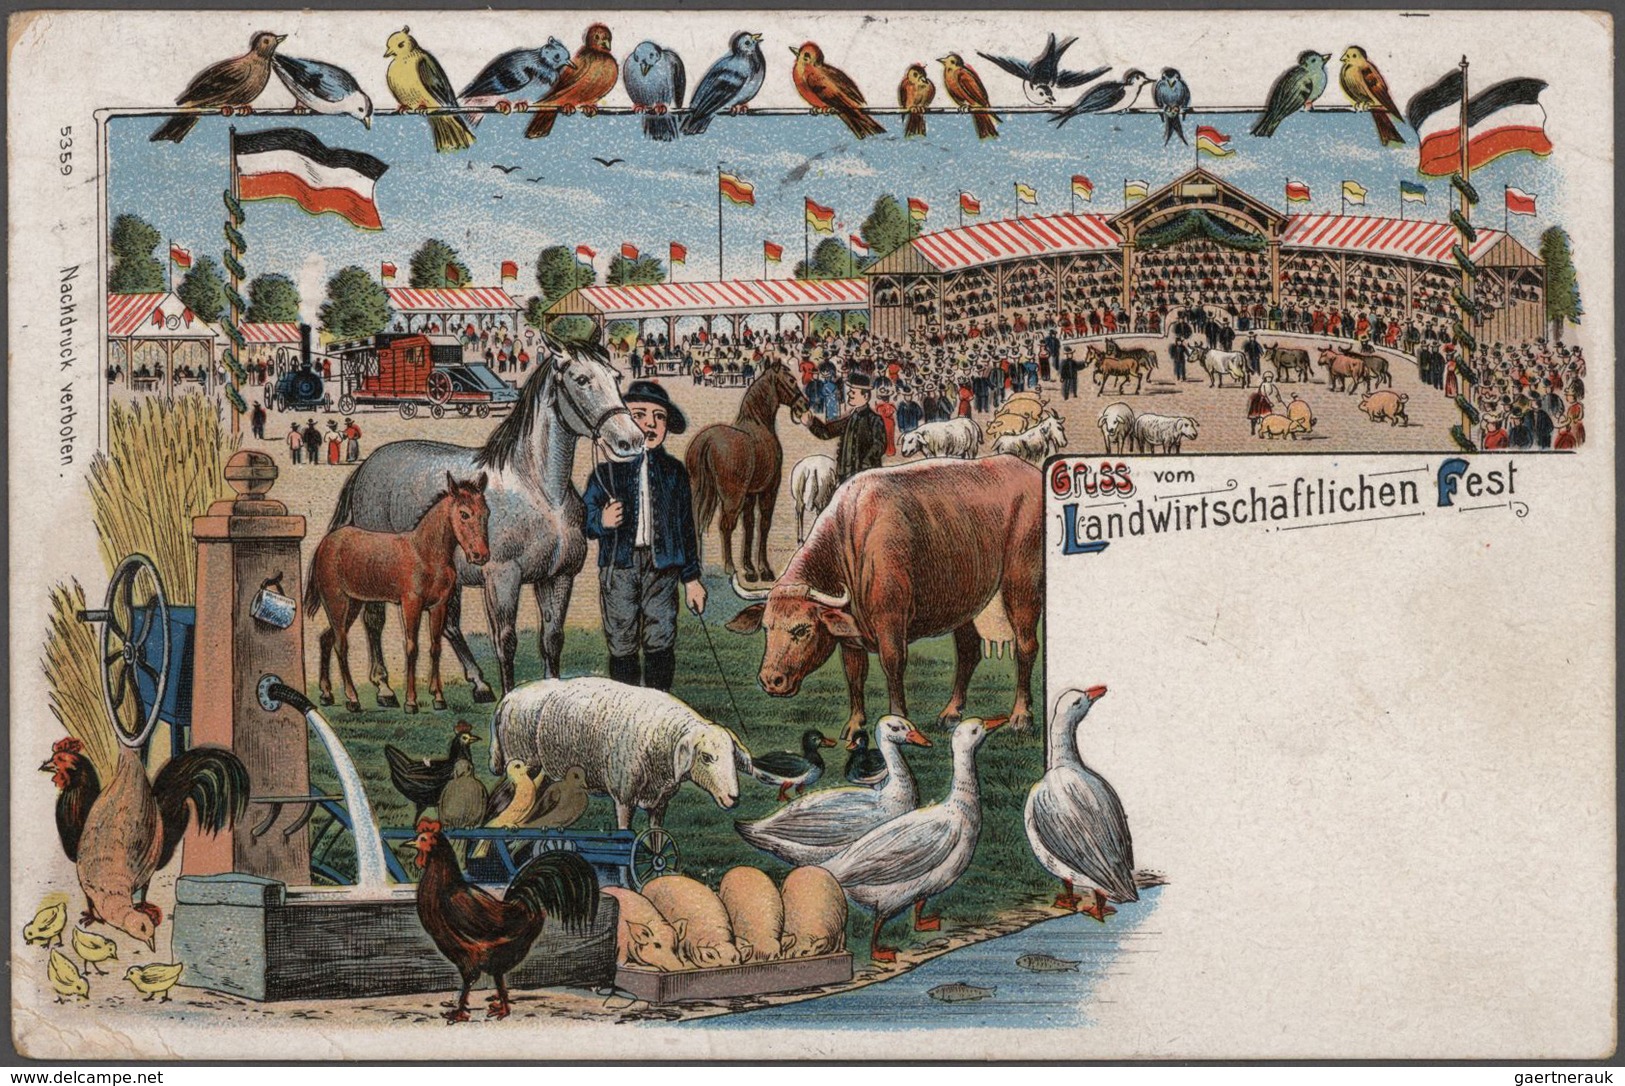 Ansichtskarten: LAGERBESTAND, ein voluminöser Bestand an weit über 35.000 historischen Ansichtskarte